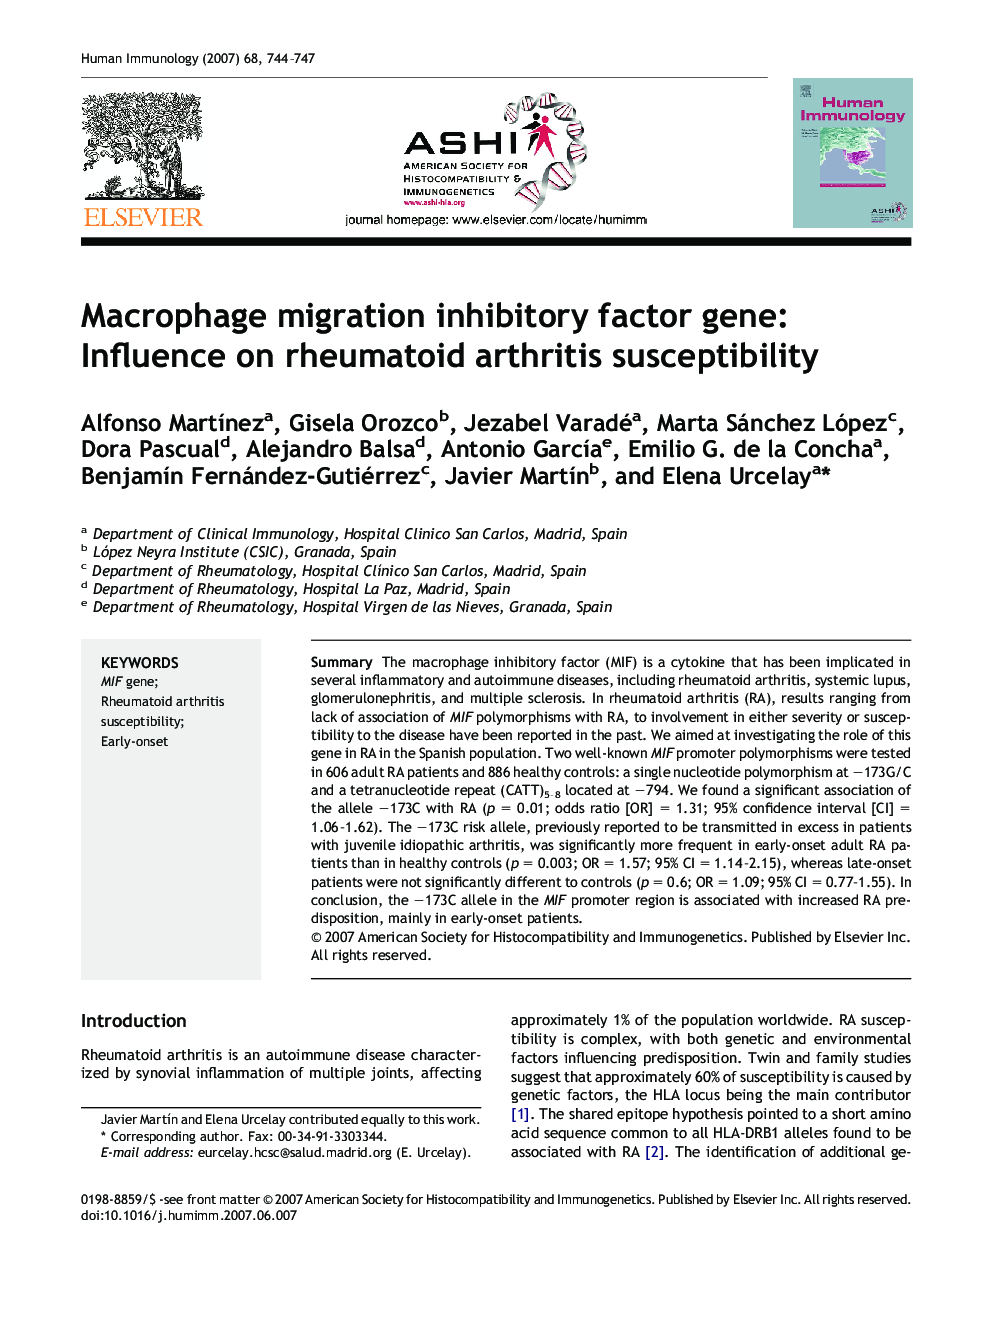 Macrophage migration inhibitory factor gene: Influence on rheumatoid arthritis susceptibility